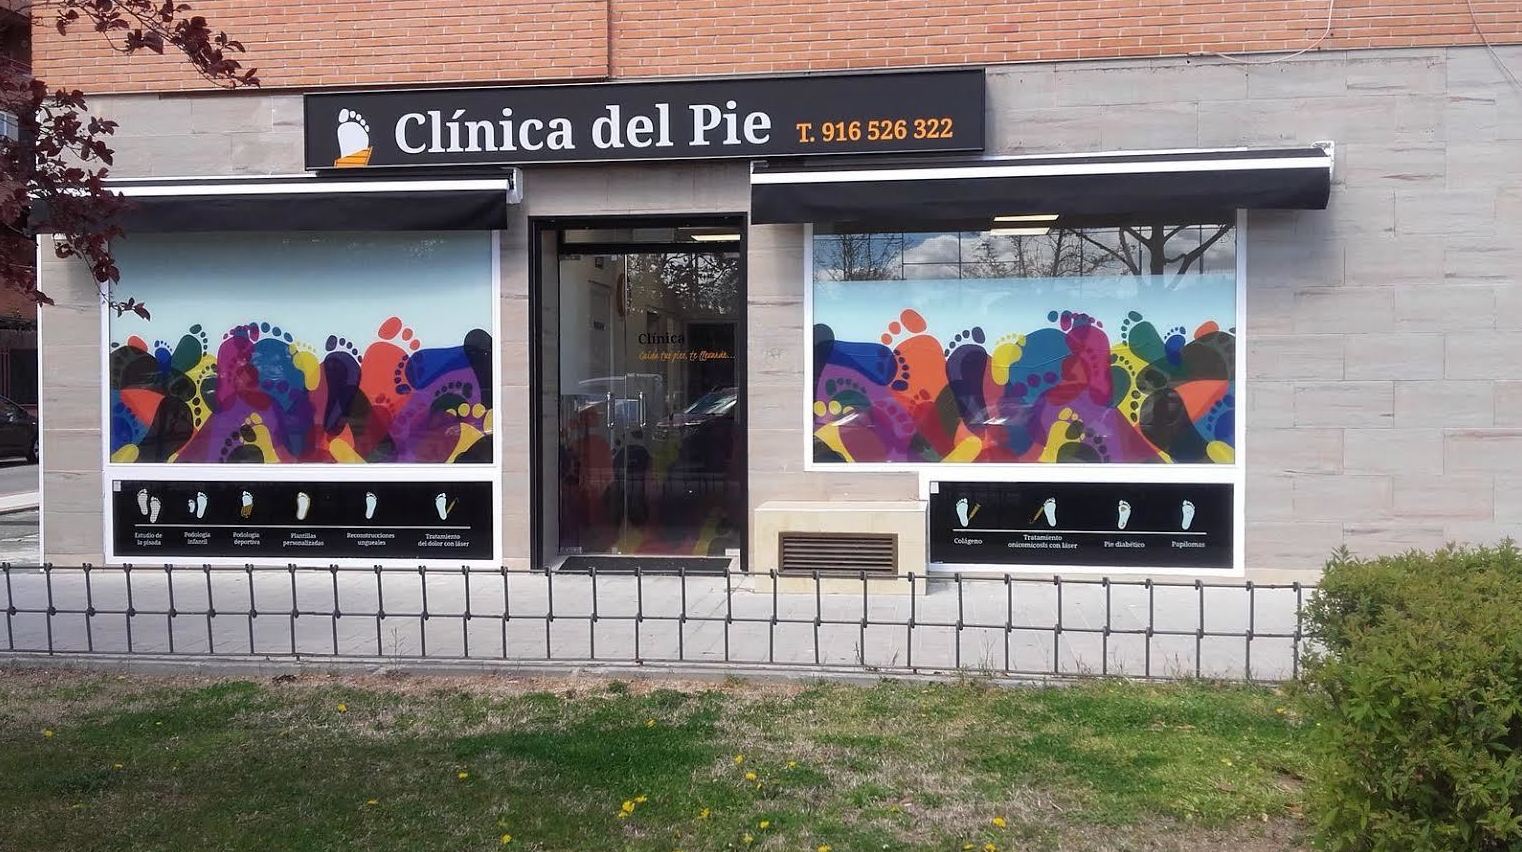 Foto 25 de Podólogos en Alcobendas | Clínica del Pie